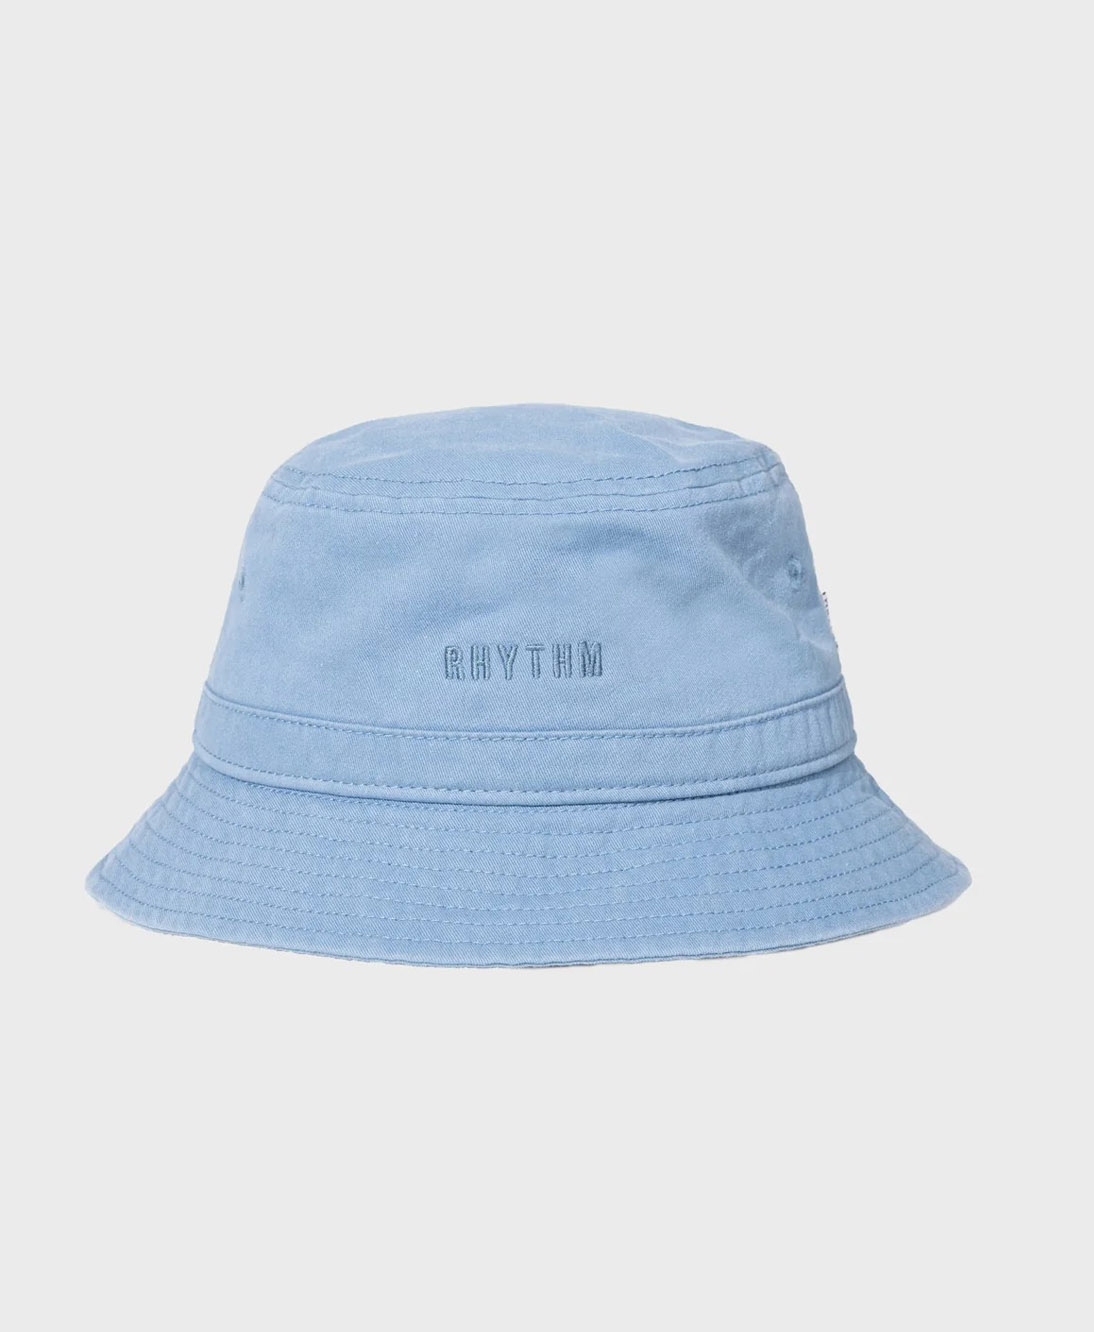 Rhythm - Rhythm Bucket Hat